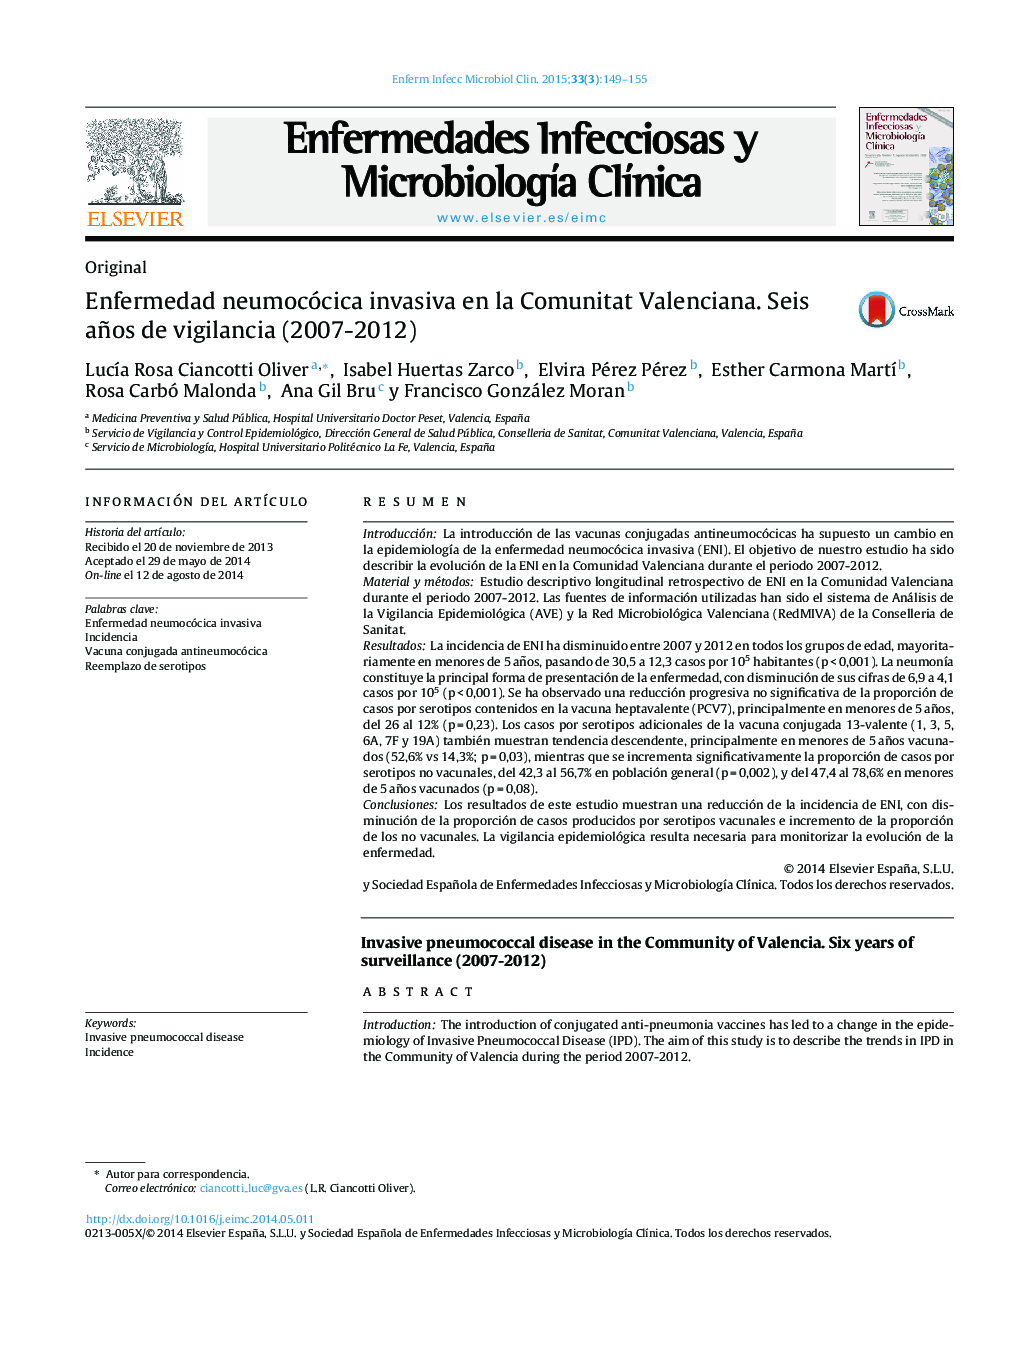 بیماری پنوموکوک درگیر در جامعه والنسیا. شش سال نظارت (2007-2012) 